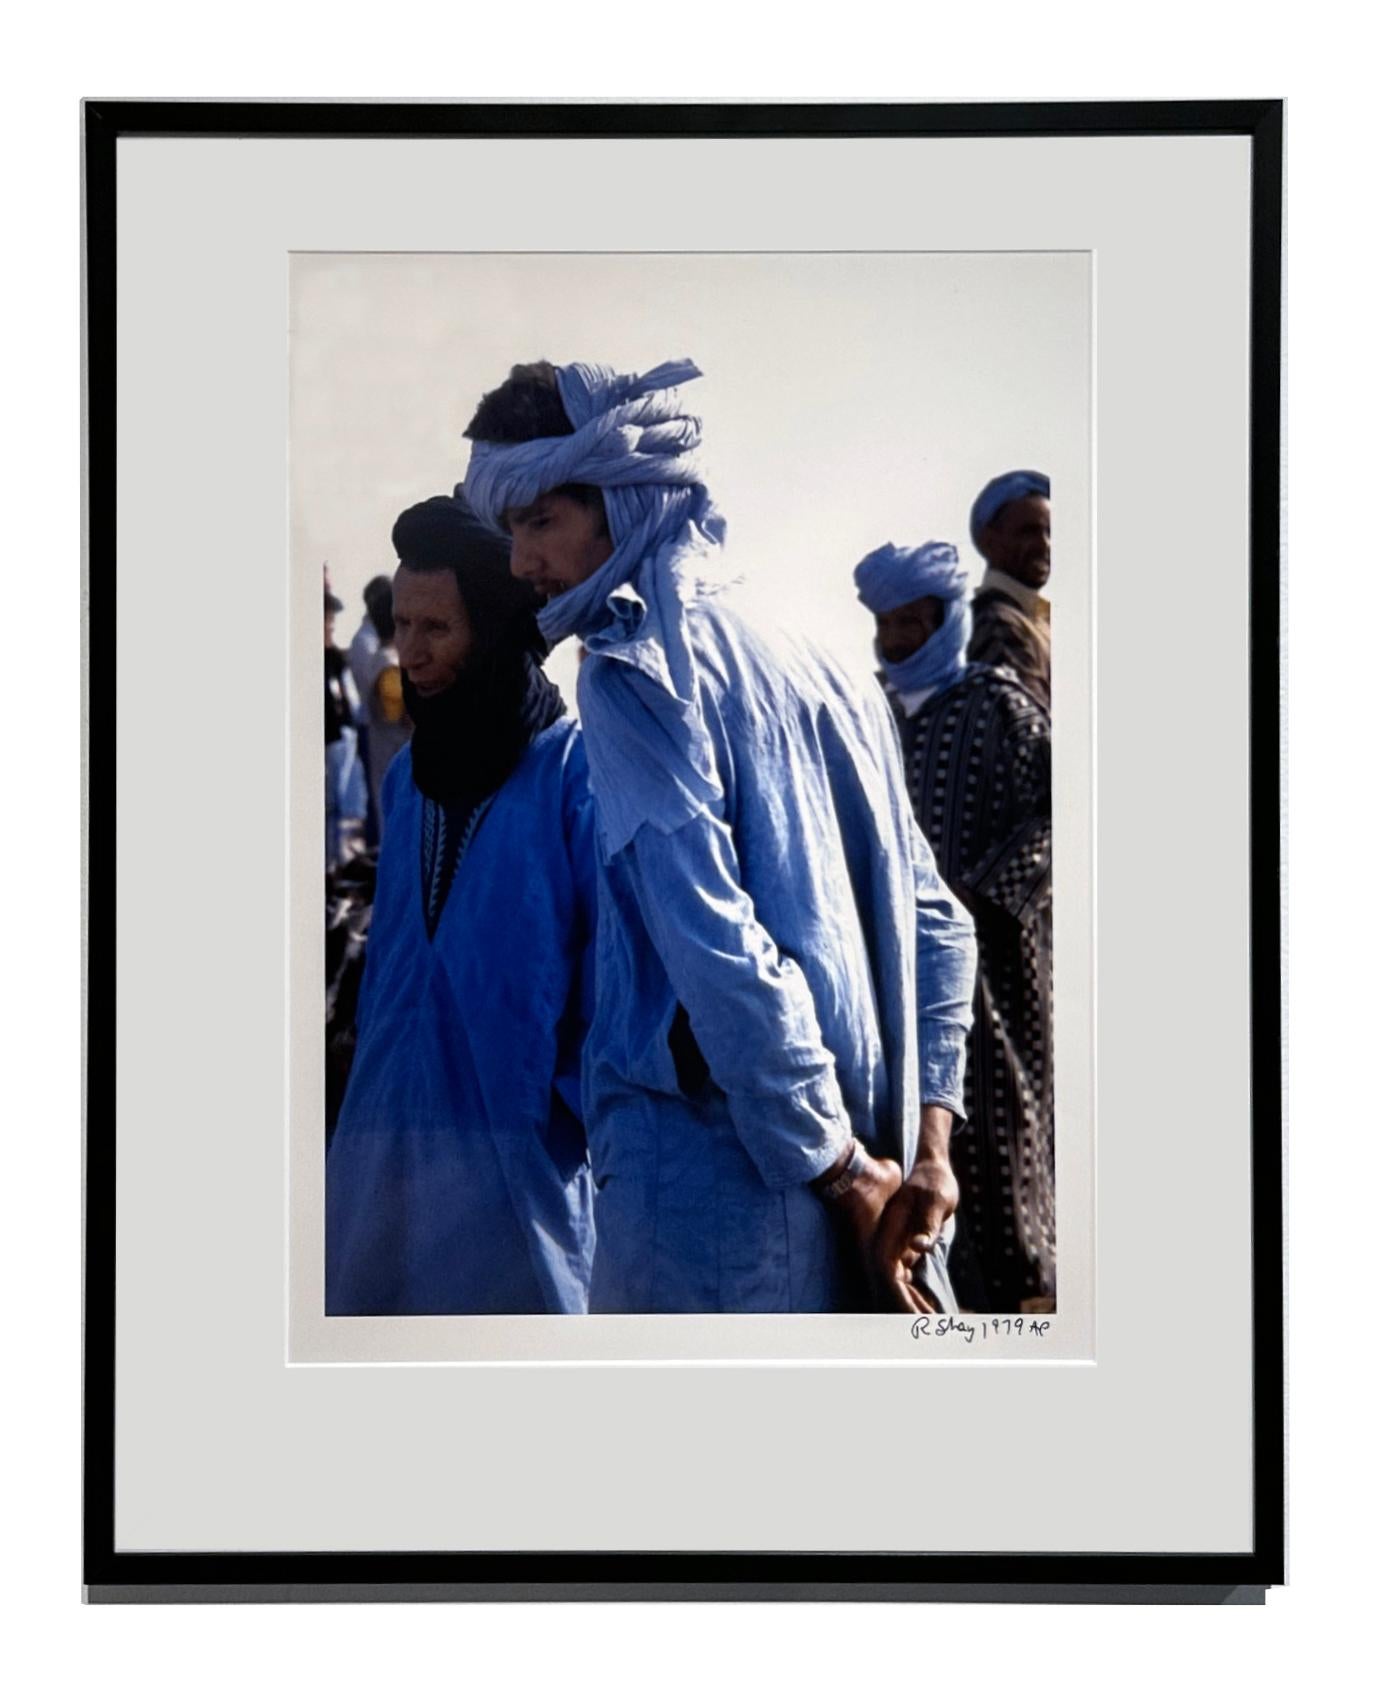 Indigofarbene Herren in Guelmim, Marokko-Markt, 1979  - Farbfotografie, mattiert und gerahmt – Photograph von Richard Shay